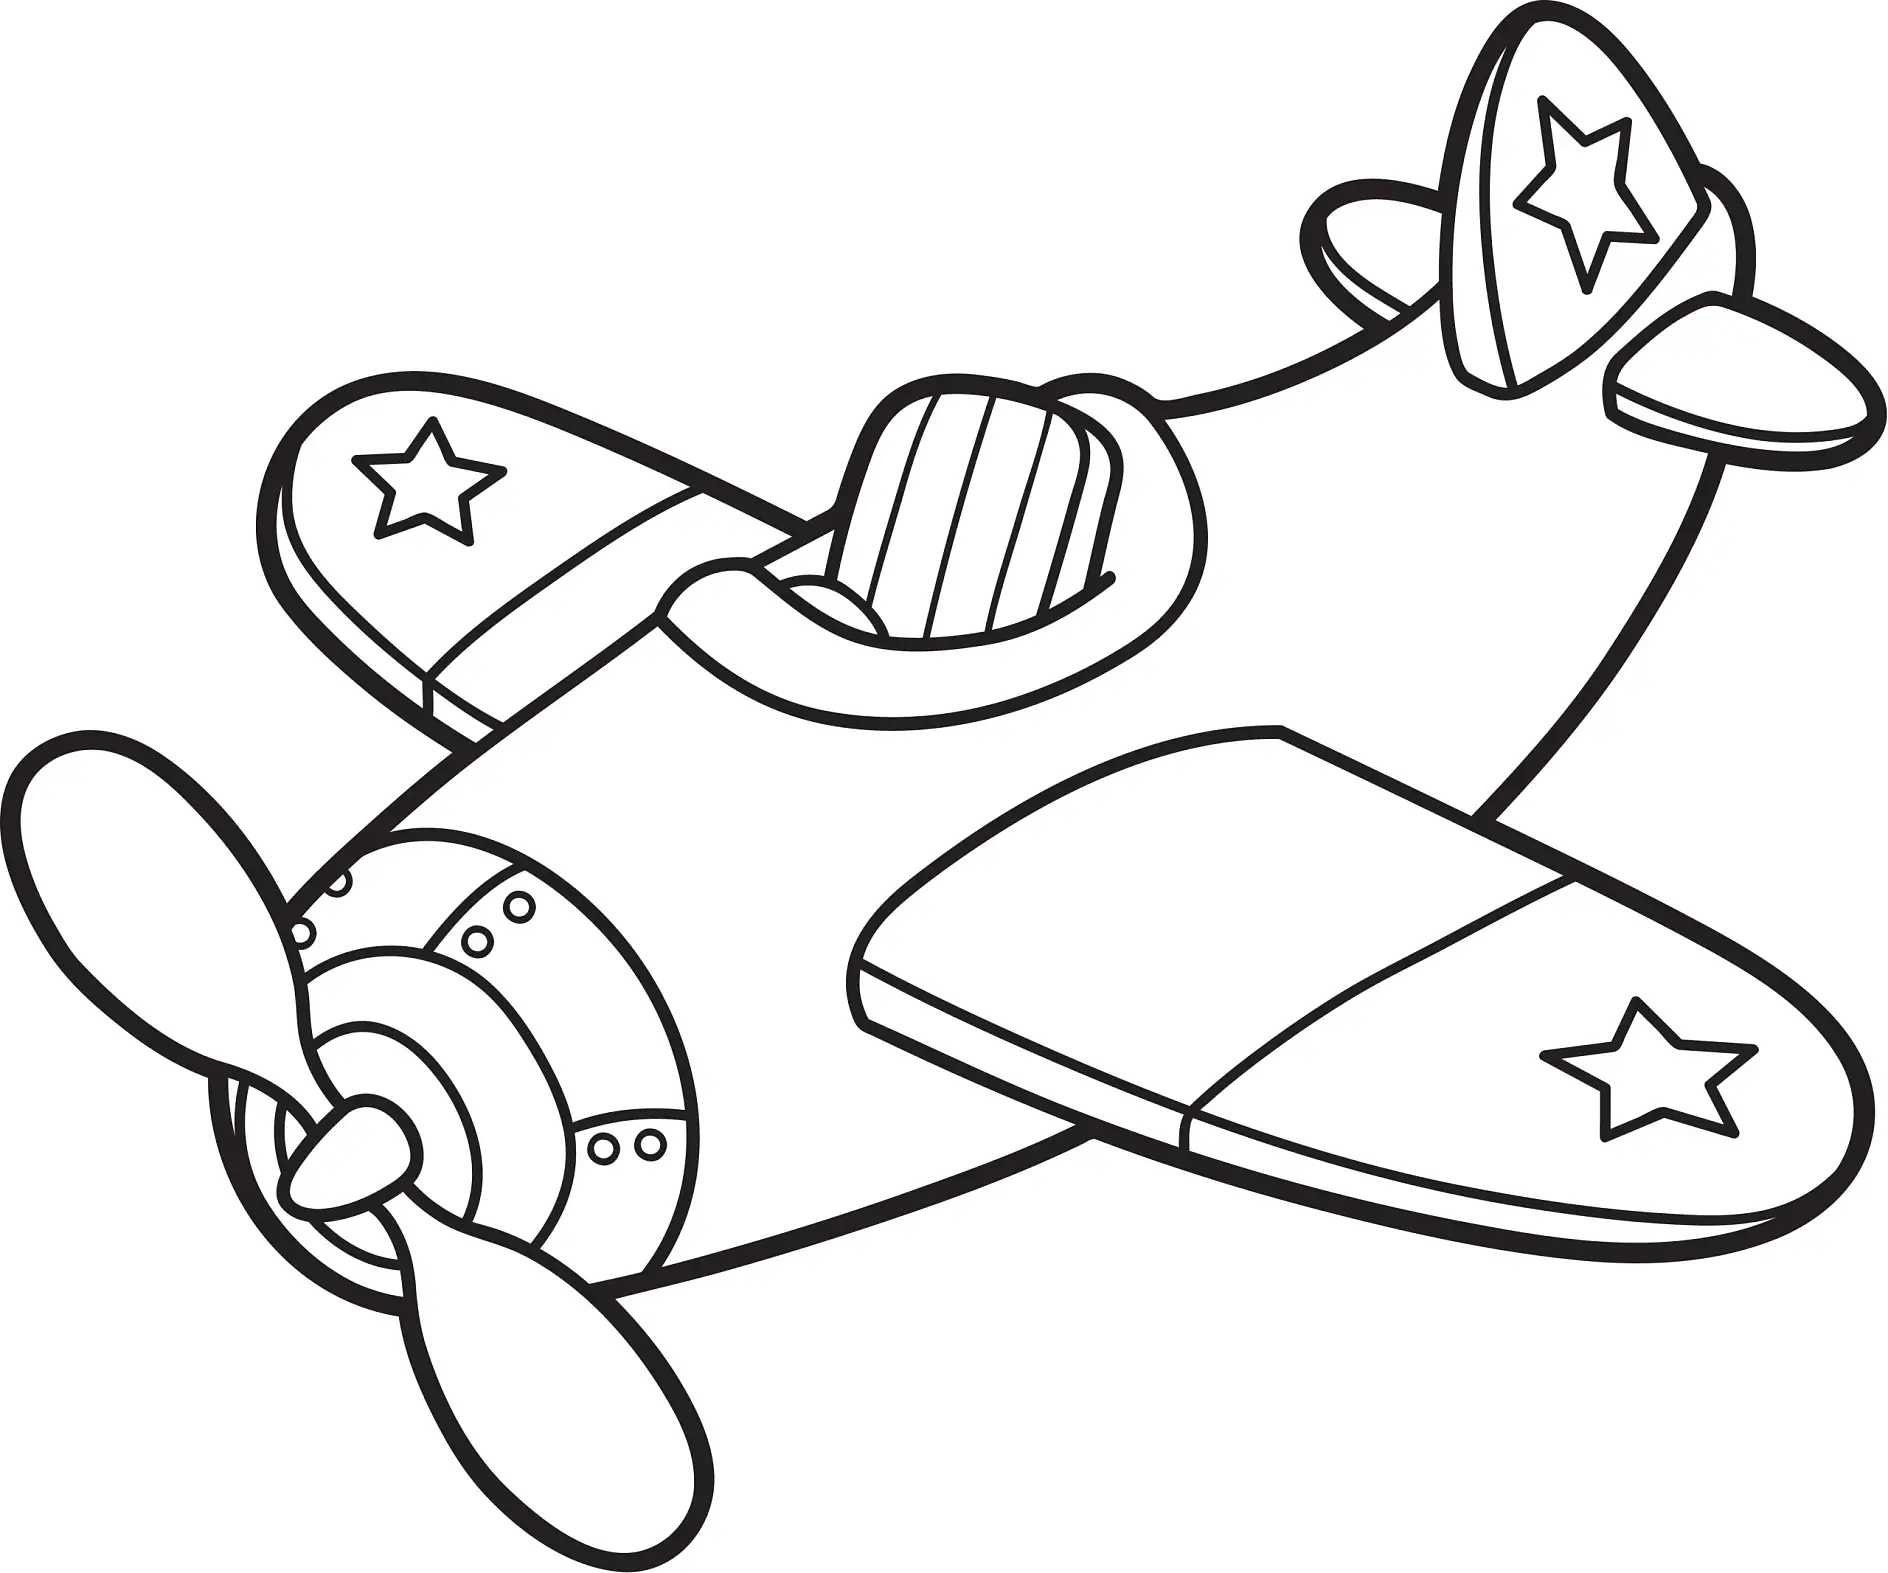 Ausmalbild Flugzeug mit Sternen und Propeller